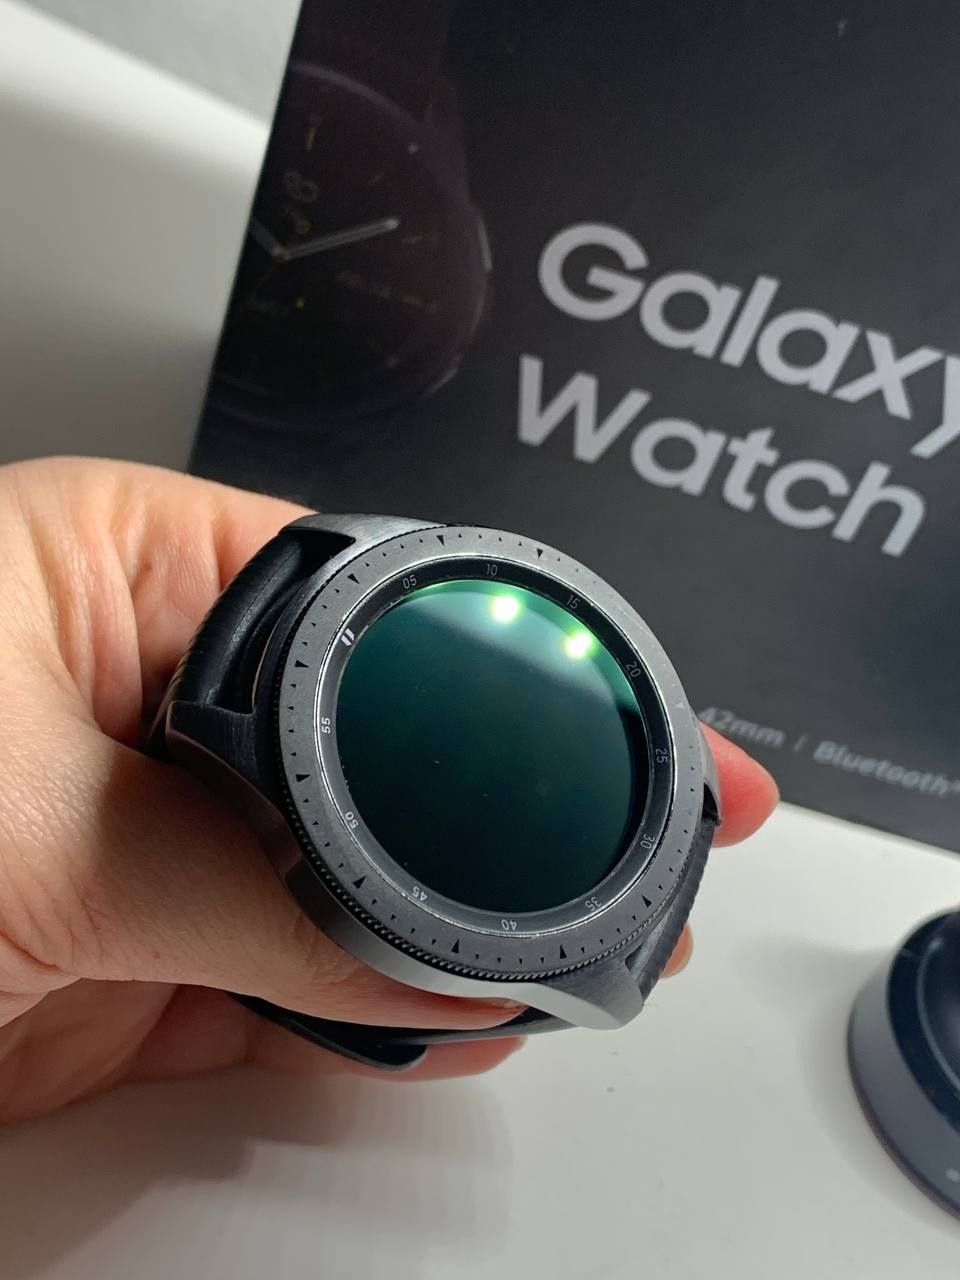 Galaxy watch 42mm